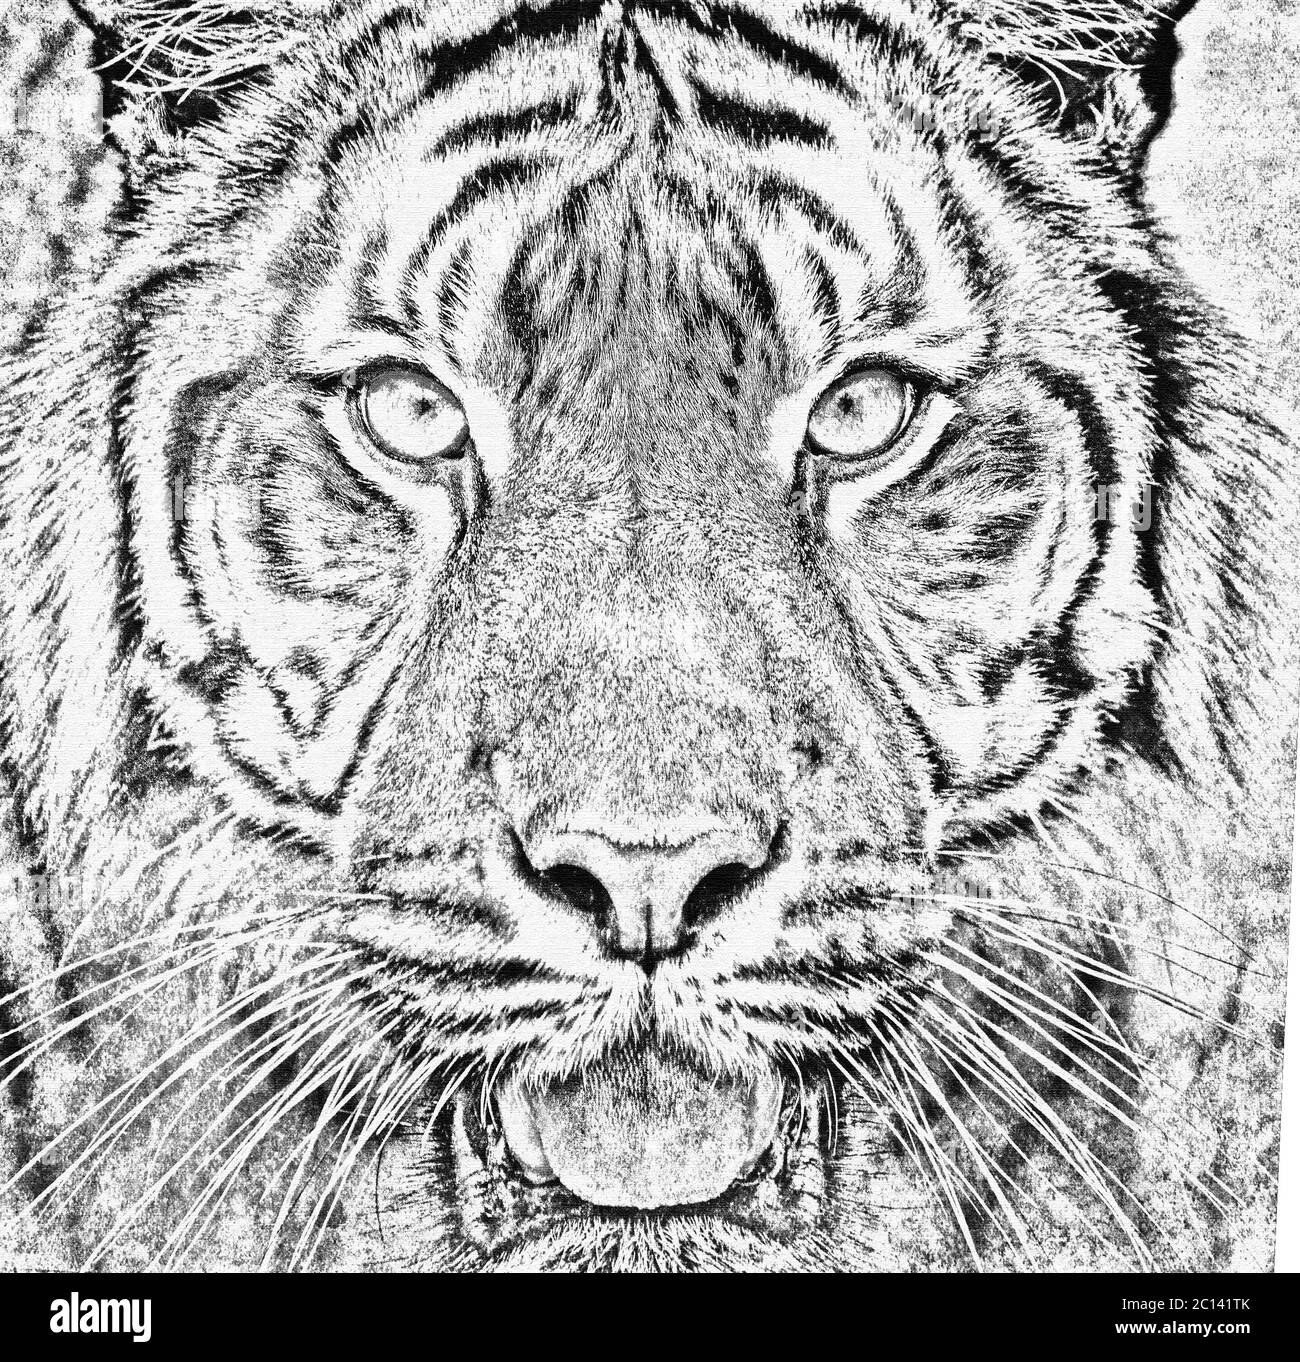 Sumatra Tiger, Panthera tigris sumatrae Stockfoto